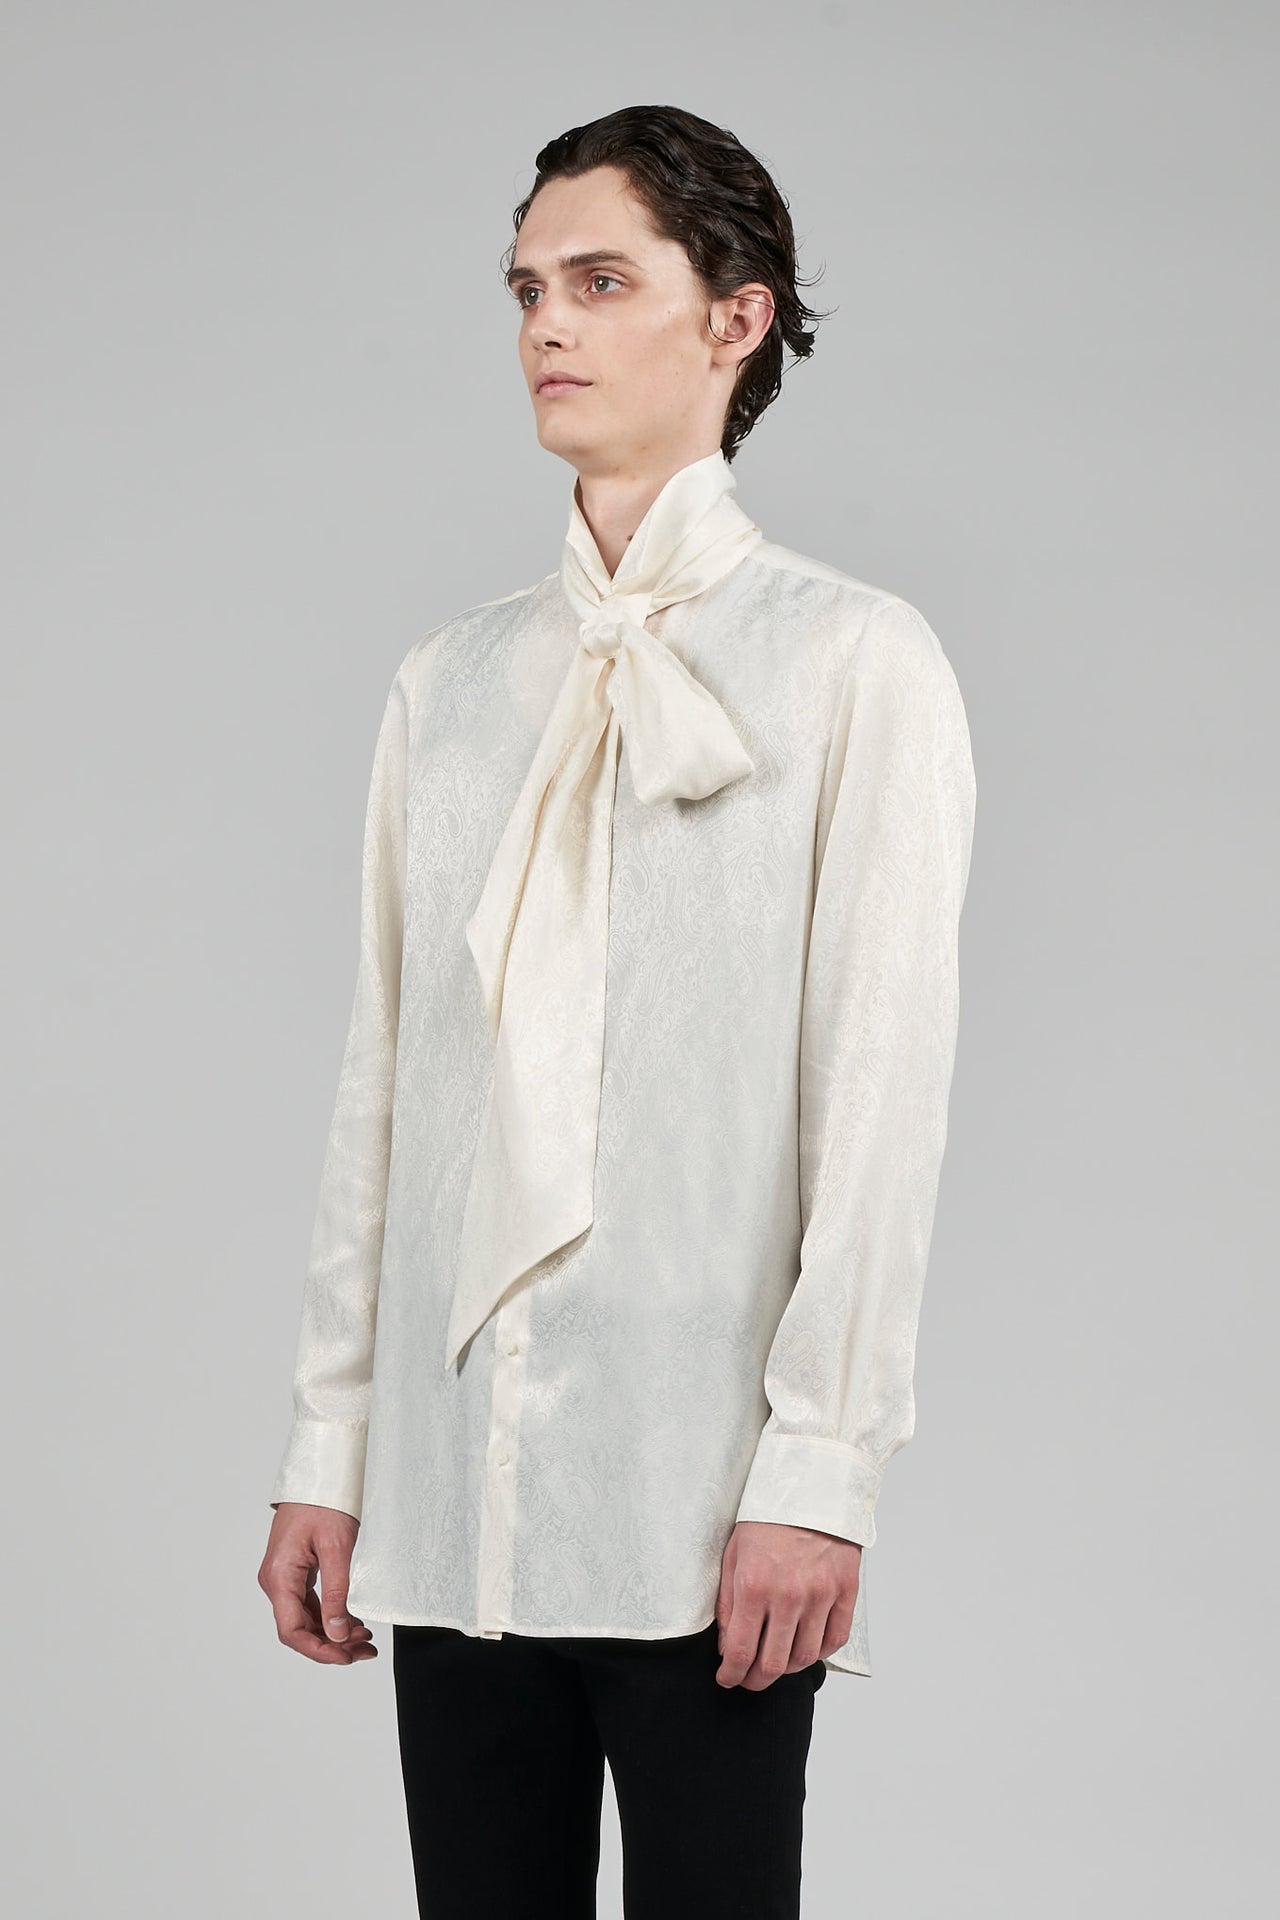 新商品発売中 GalaabenD 22AW ドレープRIBBONシャツ WHITE 新品 - トップス